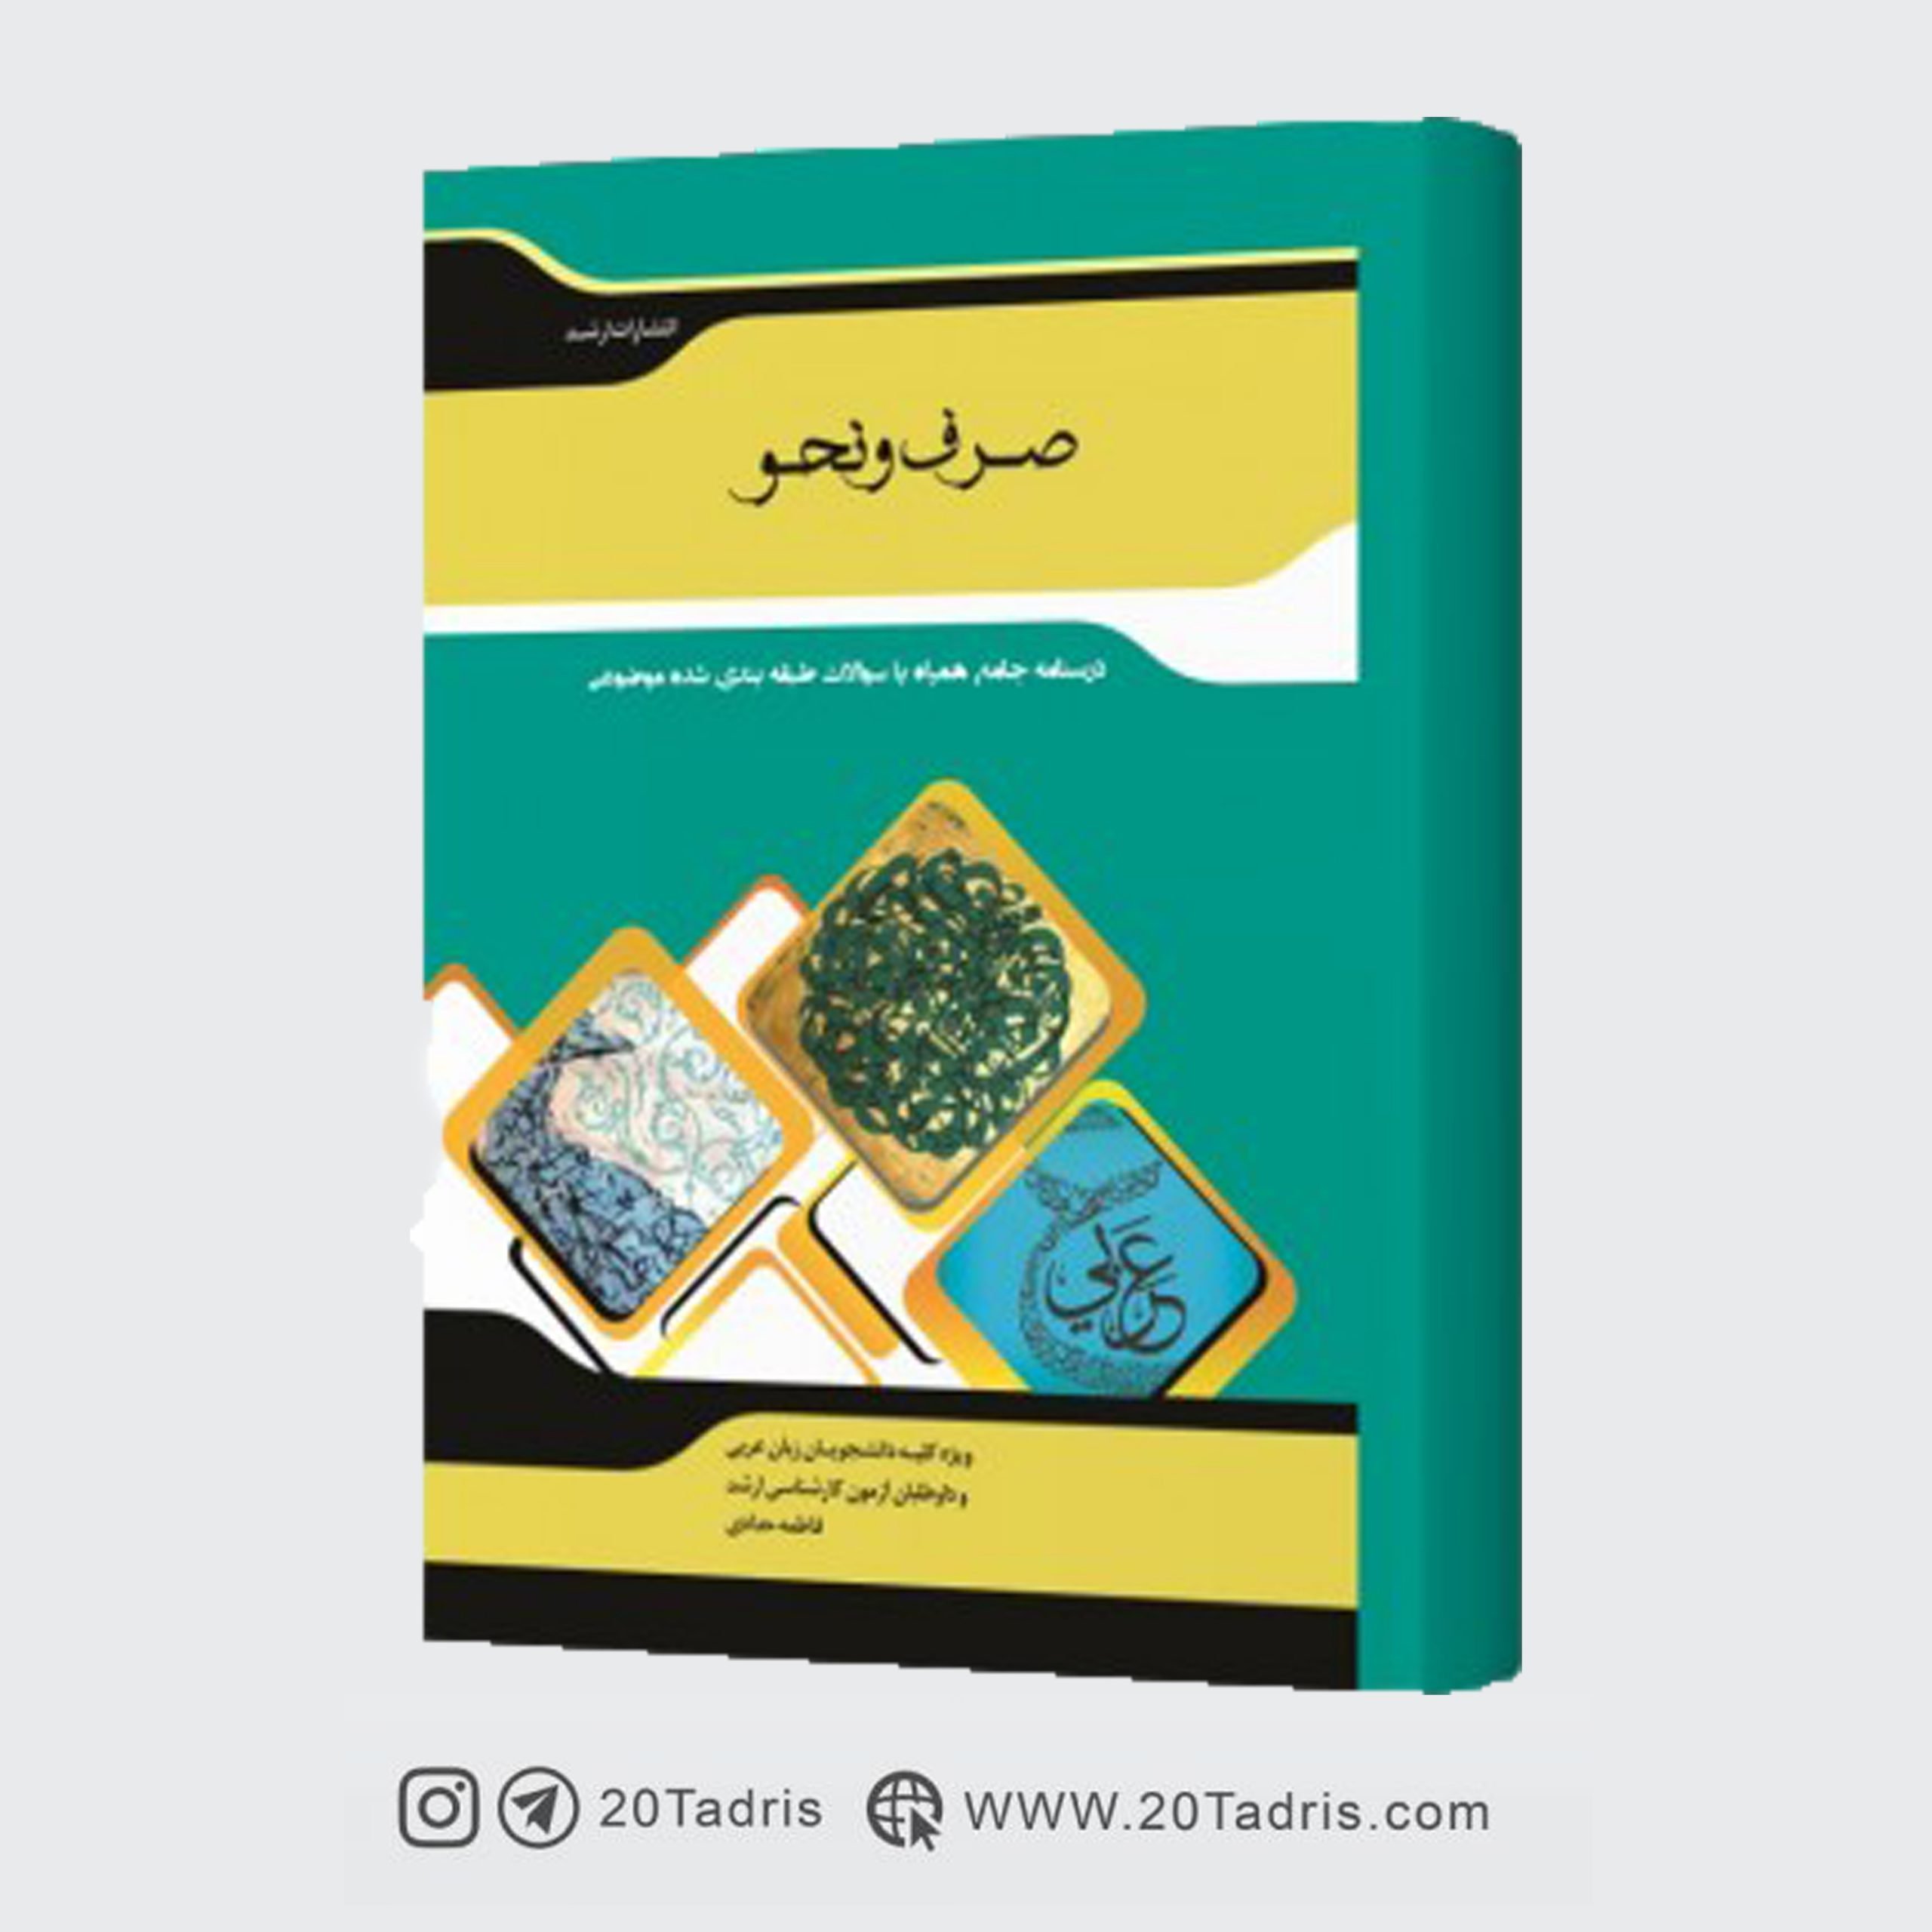 کتاب شرح جامع زبان عربی (صرف و نحو) فاطمه حدادی